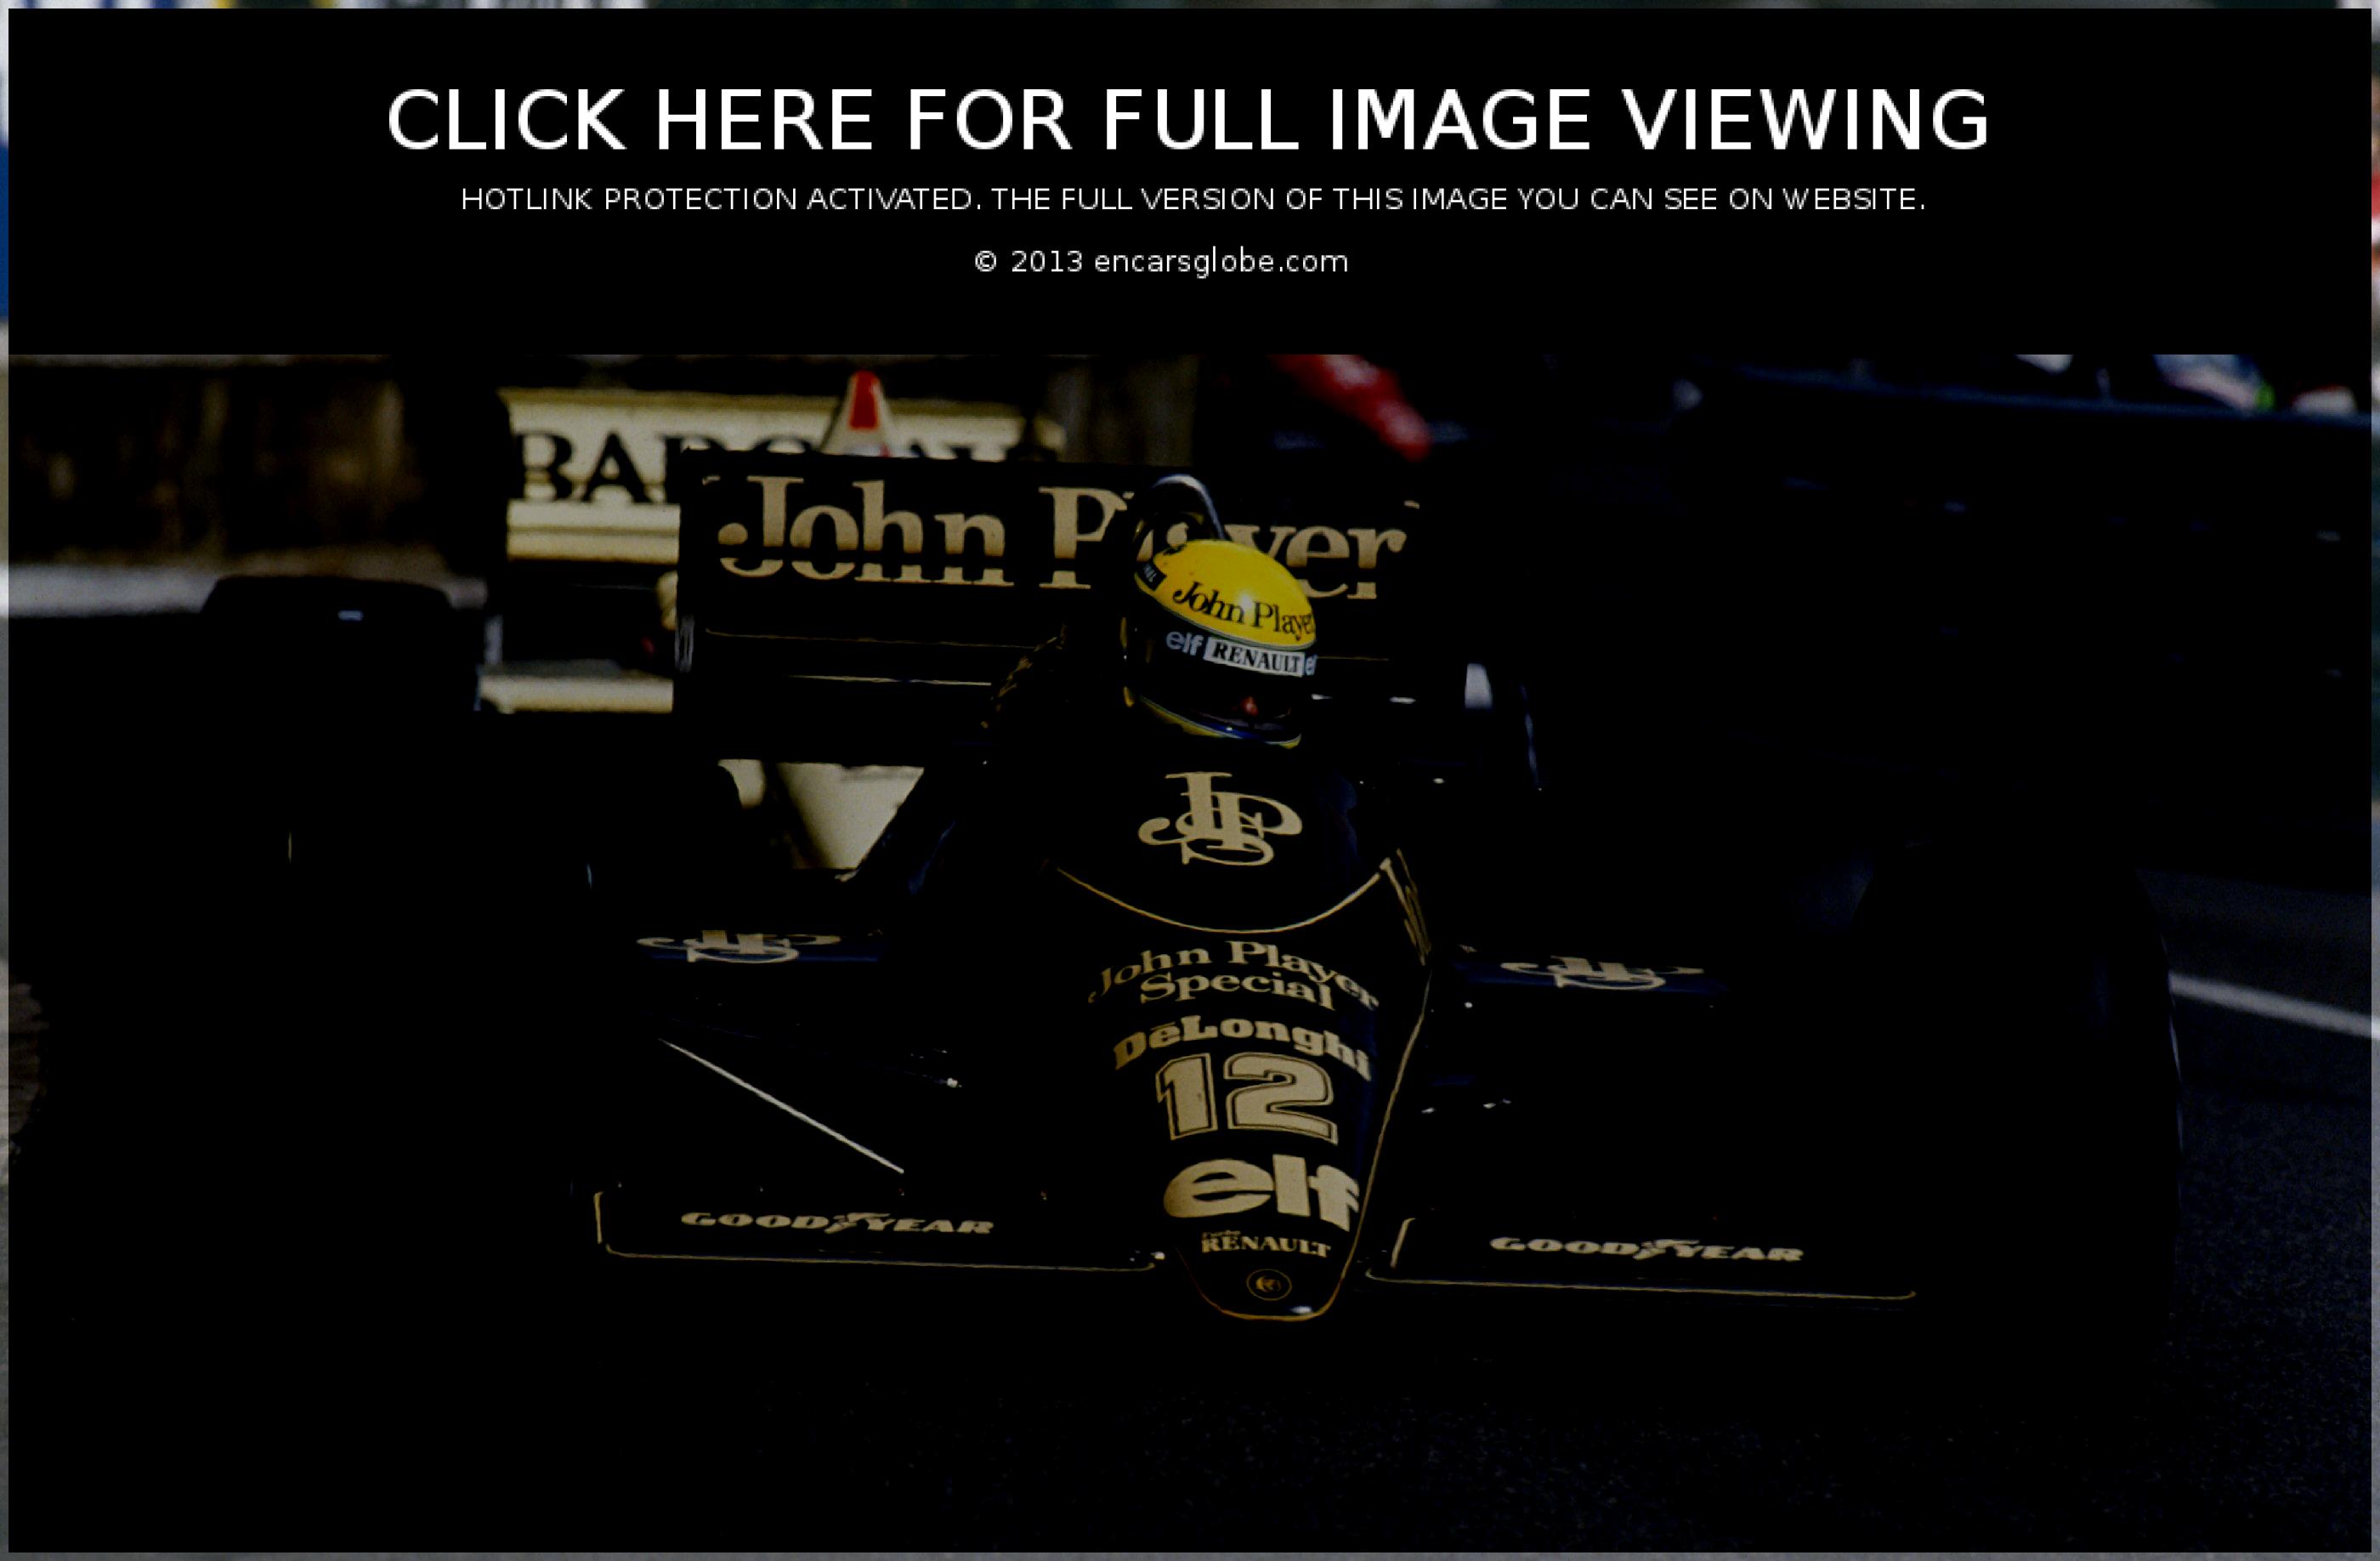 Lotus 98T Renault: Galerie de photos, informations complètes sur le modèle...